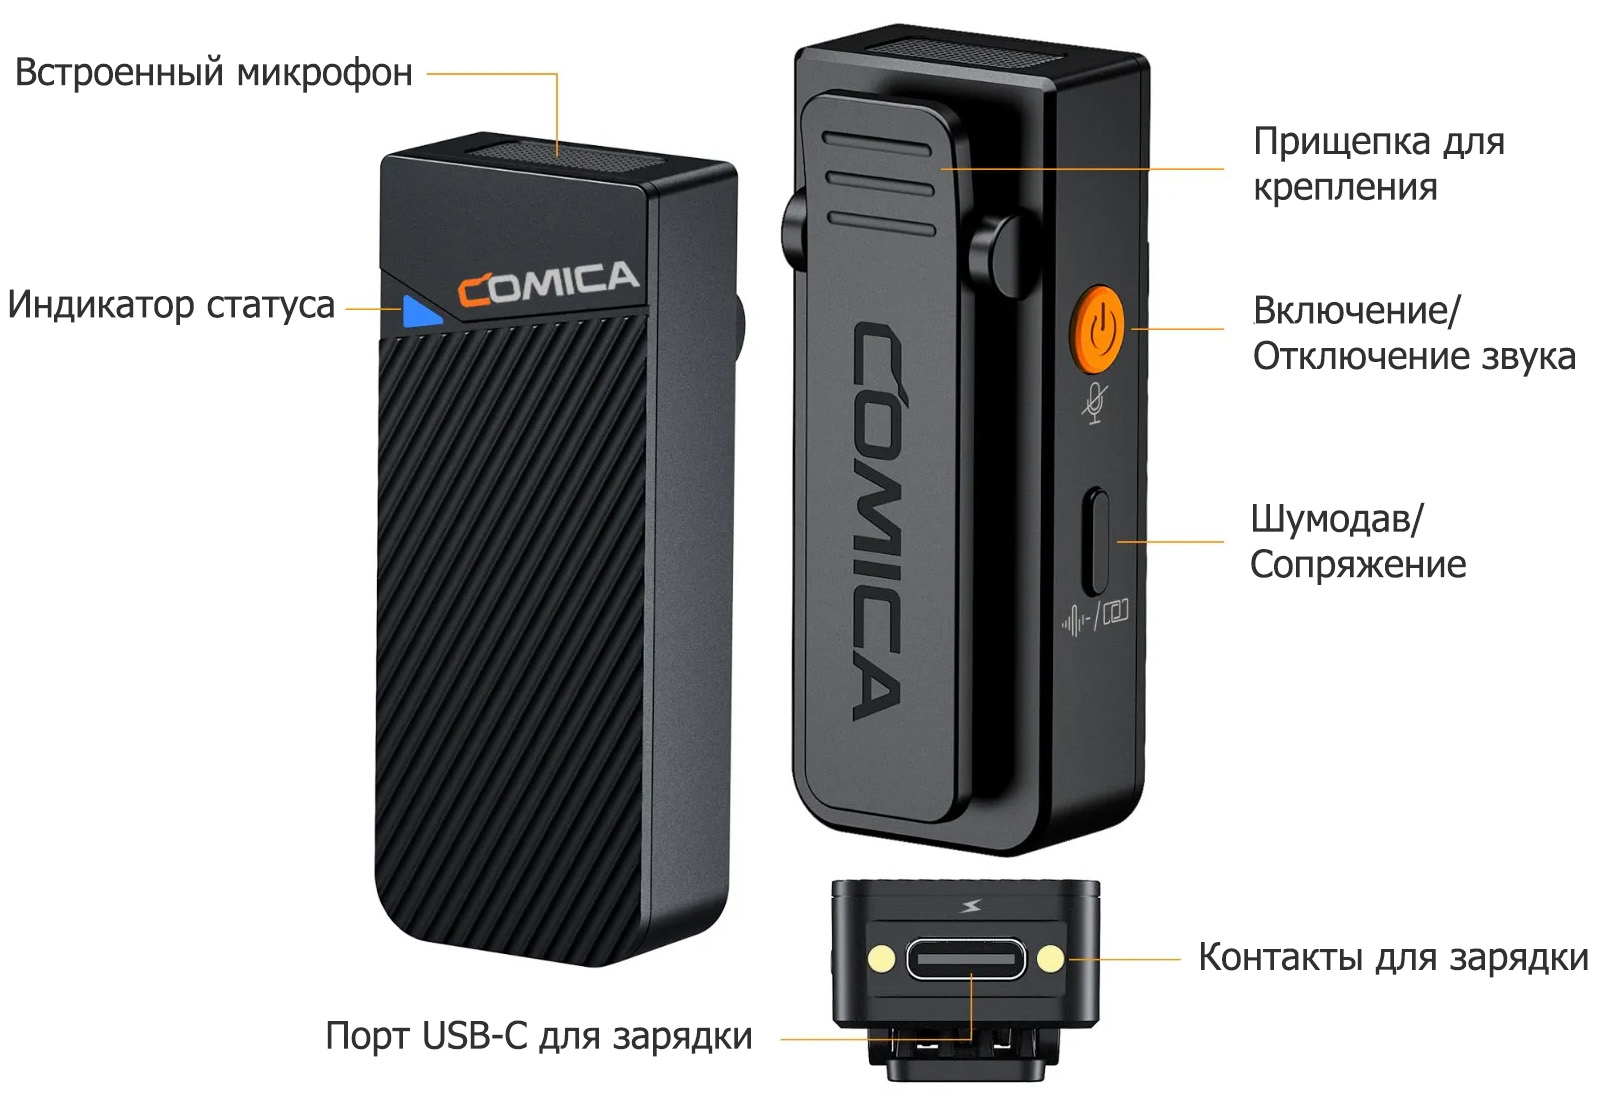 Беспроводной микрофон Comica Vimo C2 описание элементов передатчика